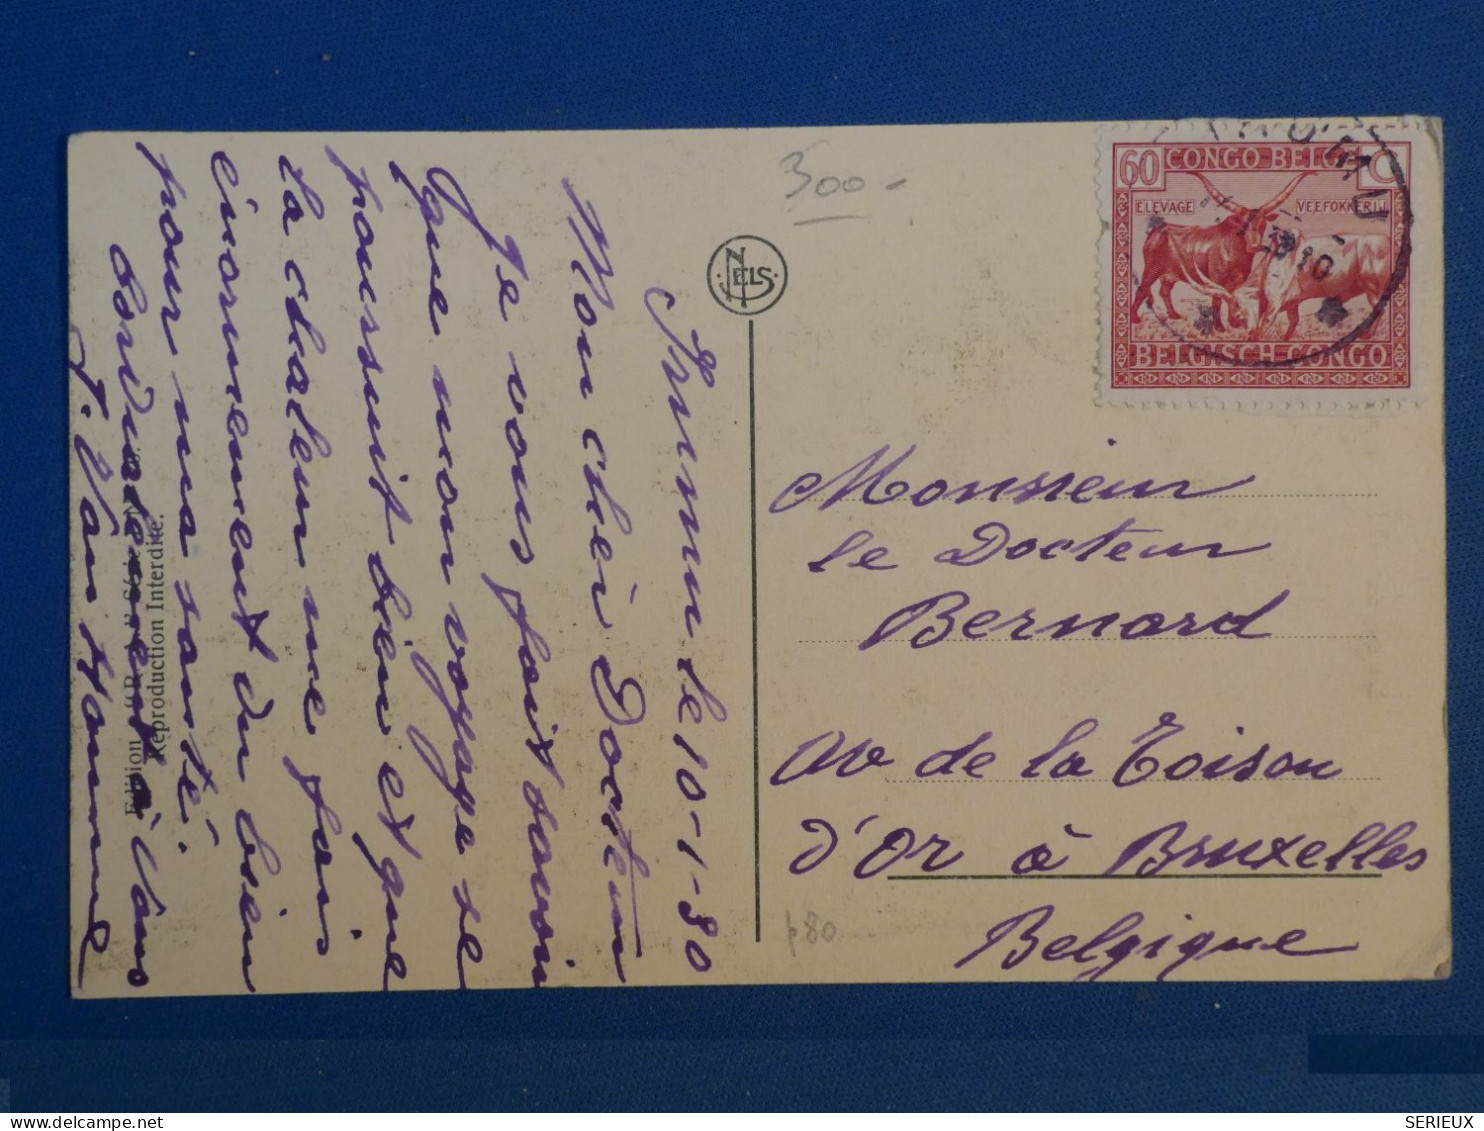 DJ 18 CONGO BELGE    CARTE  RARE 1938  PETIT BUREAU IRUMU A . A BRUSSELS  BELGIQUE +MALADIE DU SOMMEIL   +++ - Lettres & Documents